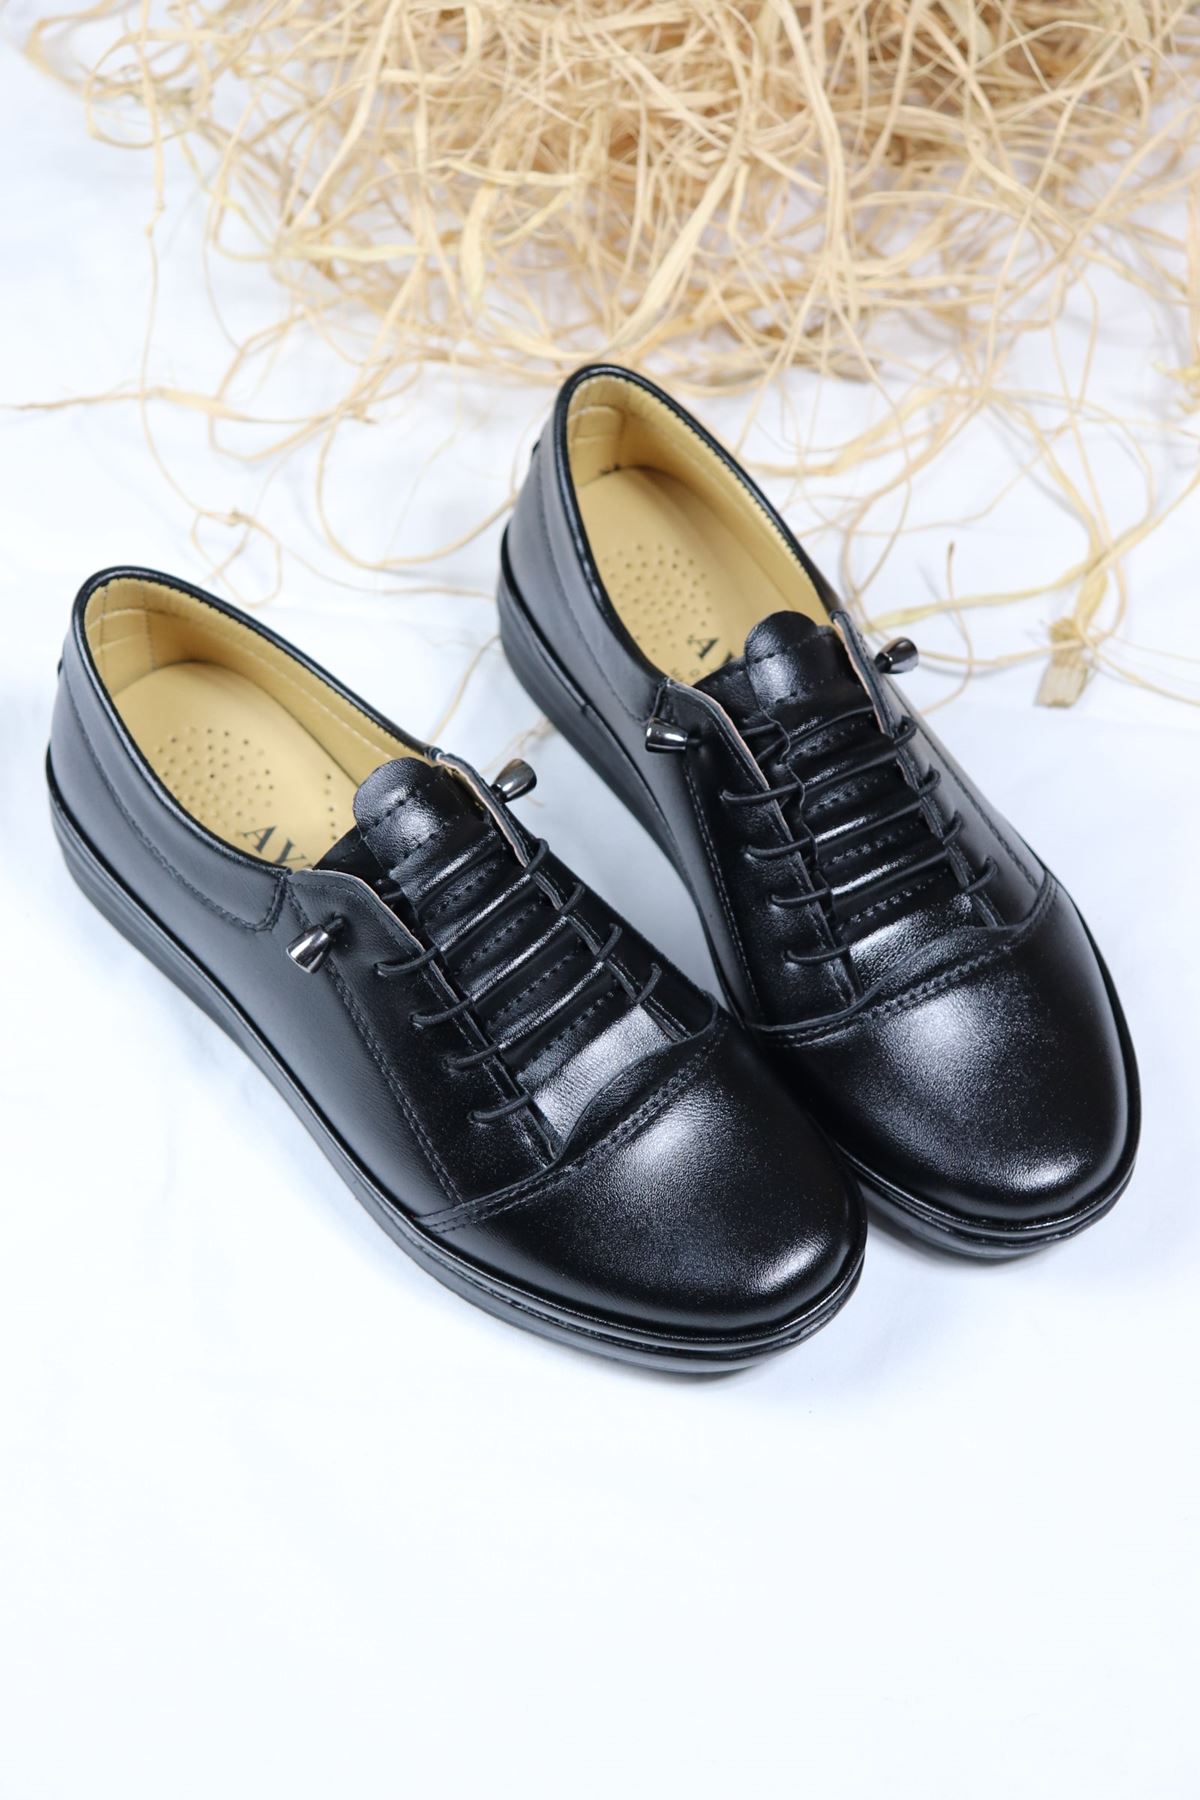 Trendayakkabı - Ortapedik Lastik Bağcıklı Anne Ayakkabı